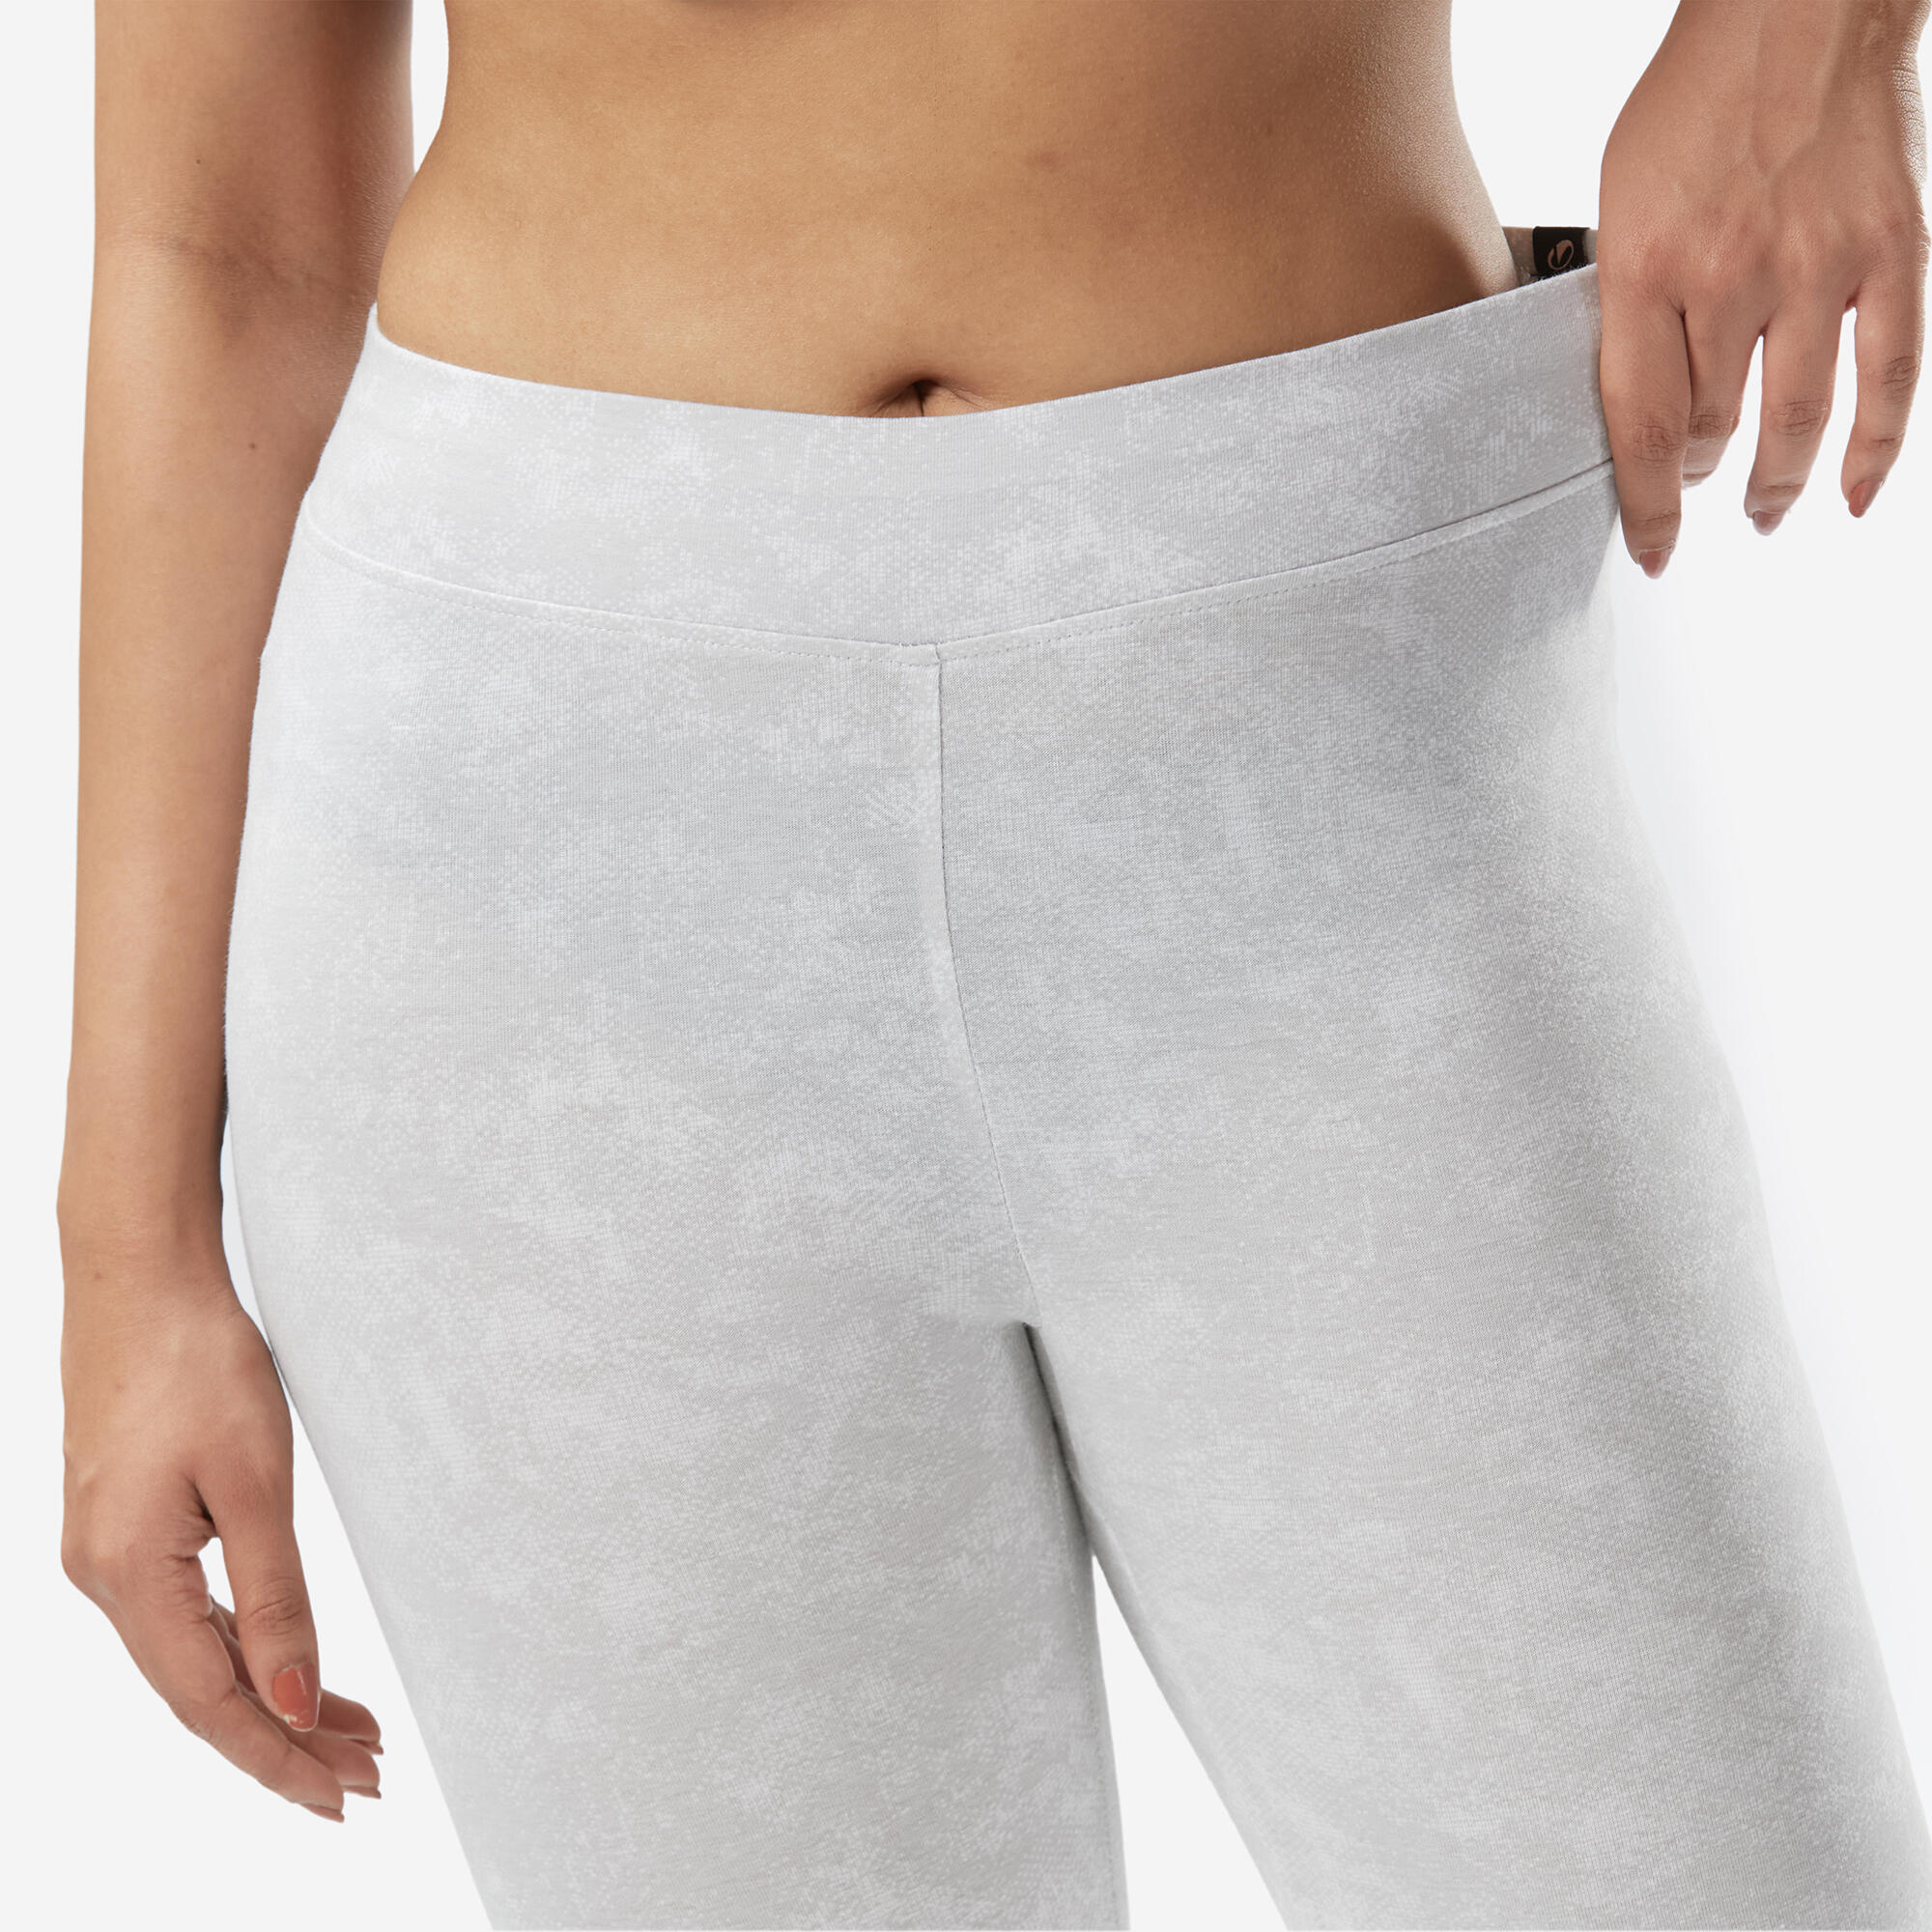 Women's Slim-Fit Fitness Leggings Fit+ 500 - Grey Print 3/6